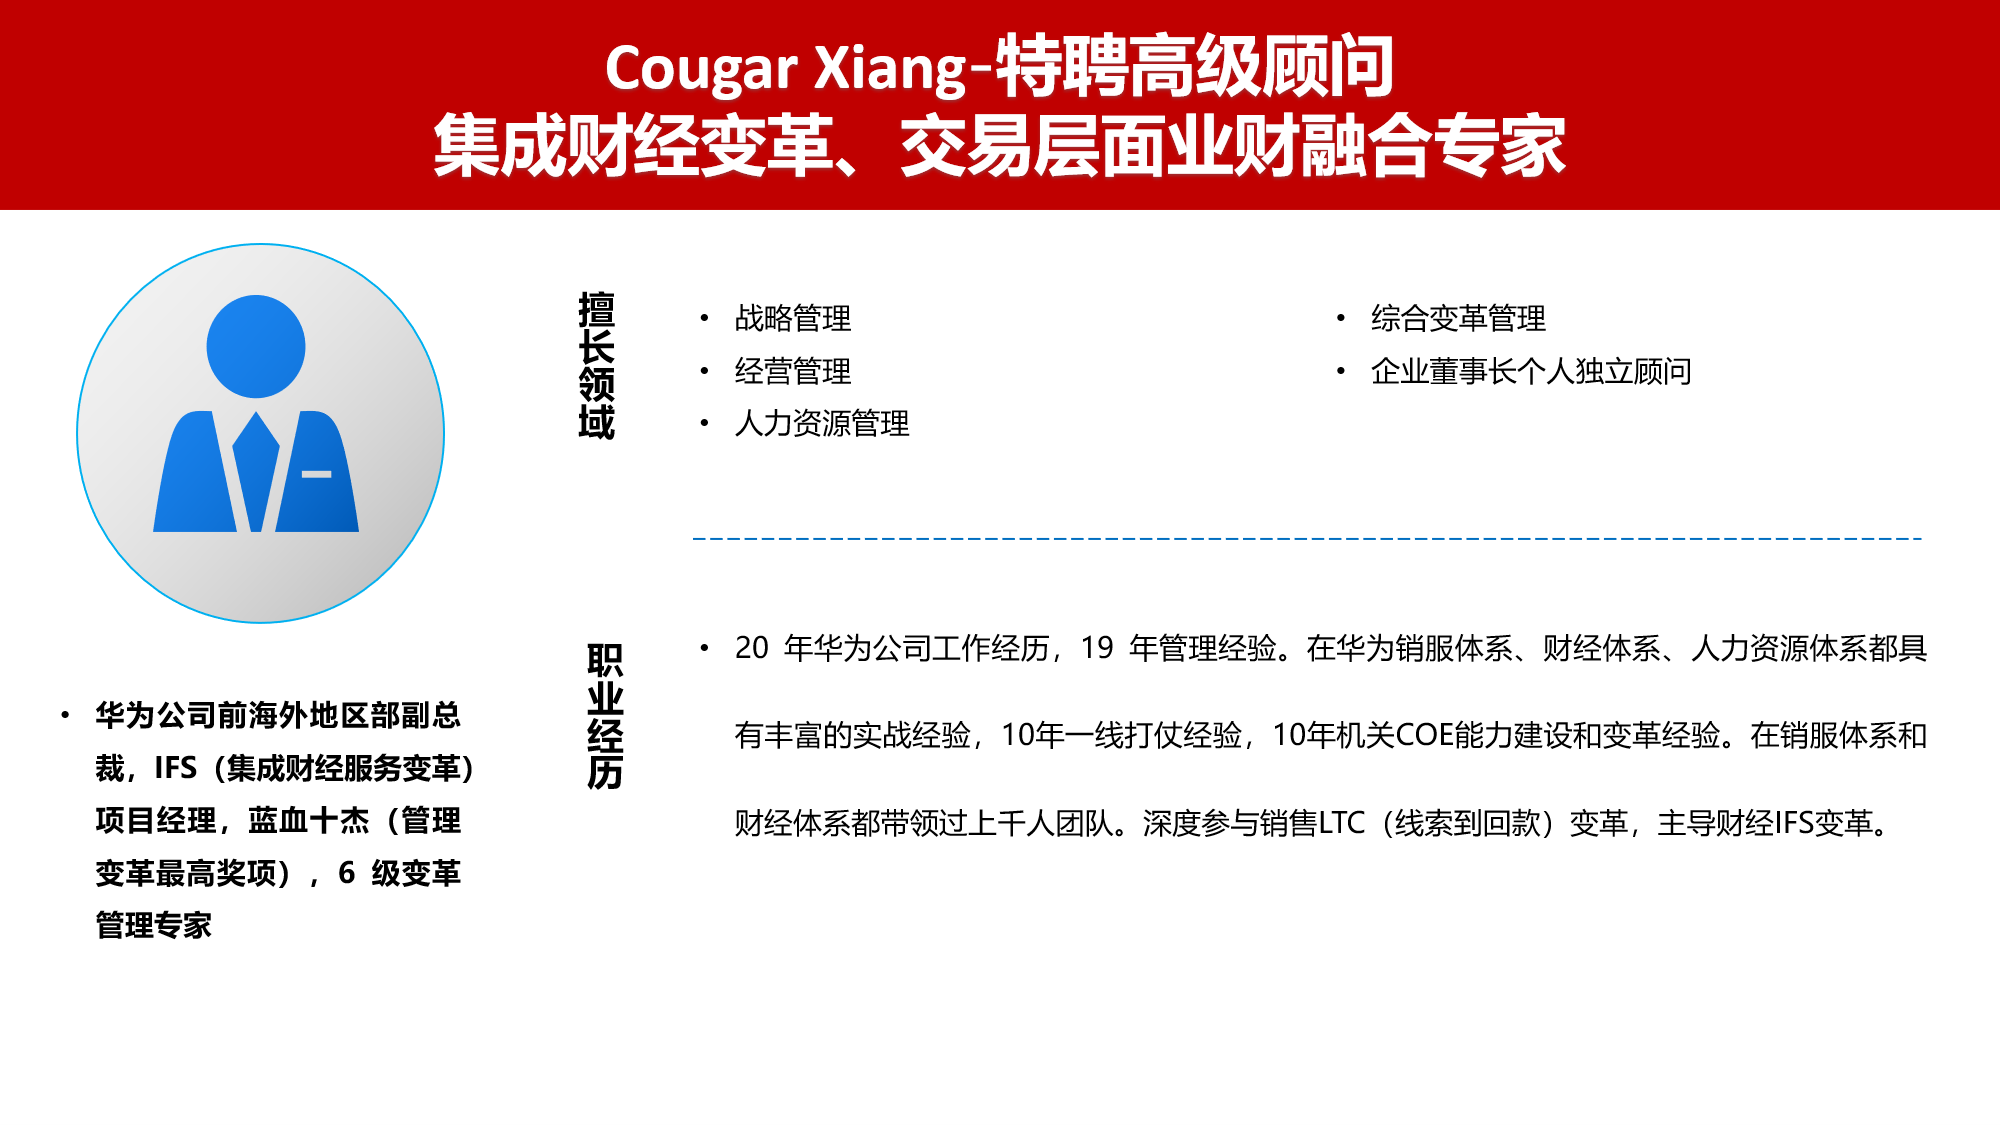 2-Cougar Xiang